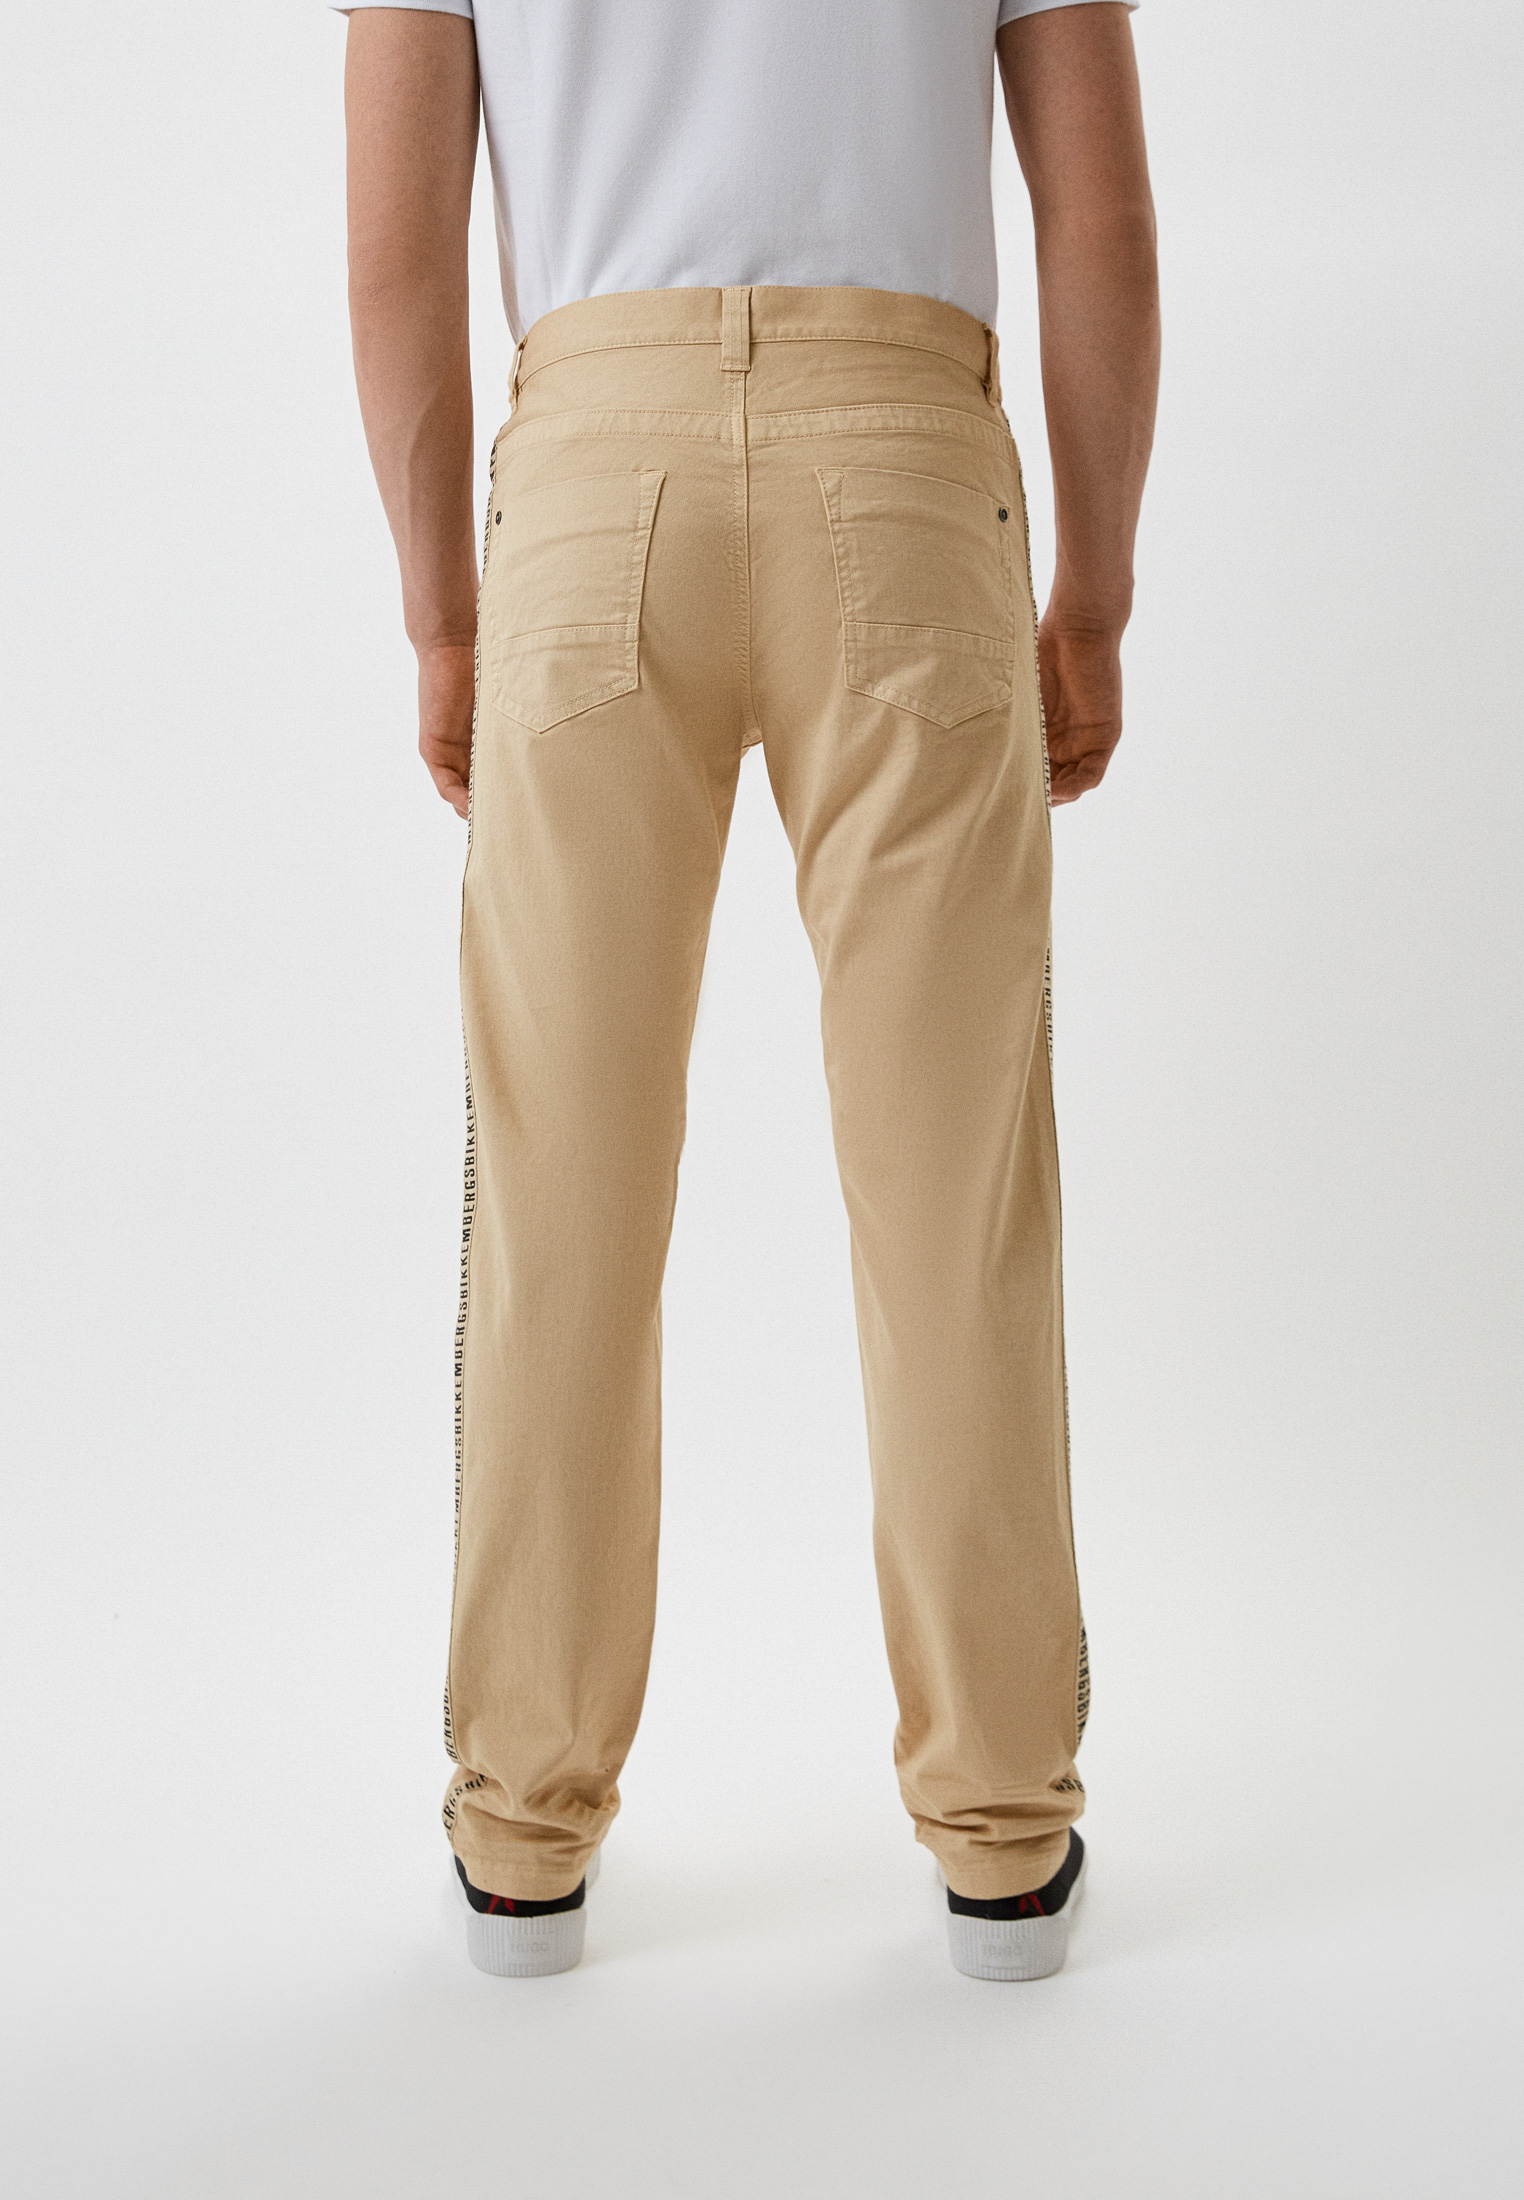 Мужские повседневные брюки Bikkembergs (Биккембергс) C Q 102 80 S 3394: изображение 3